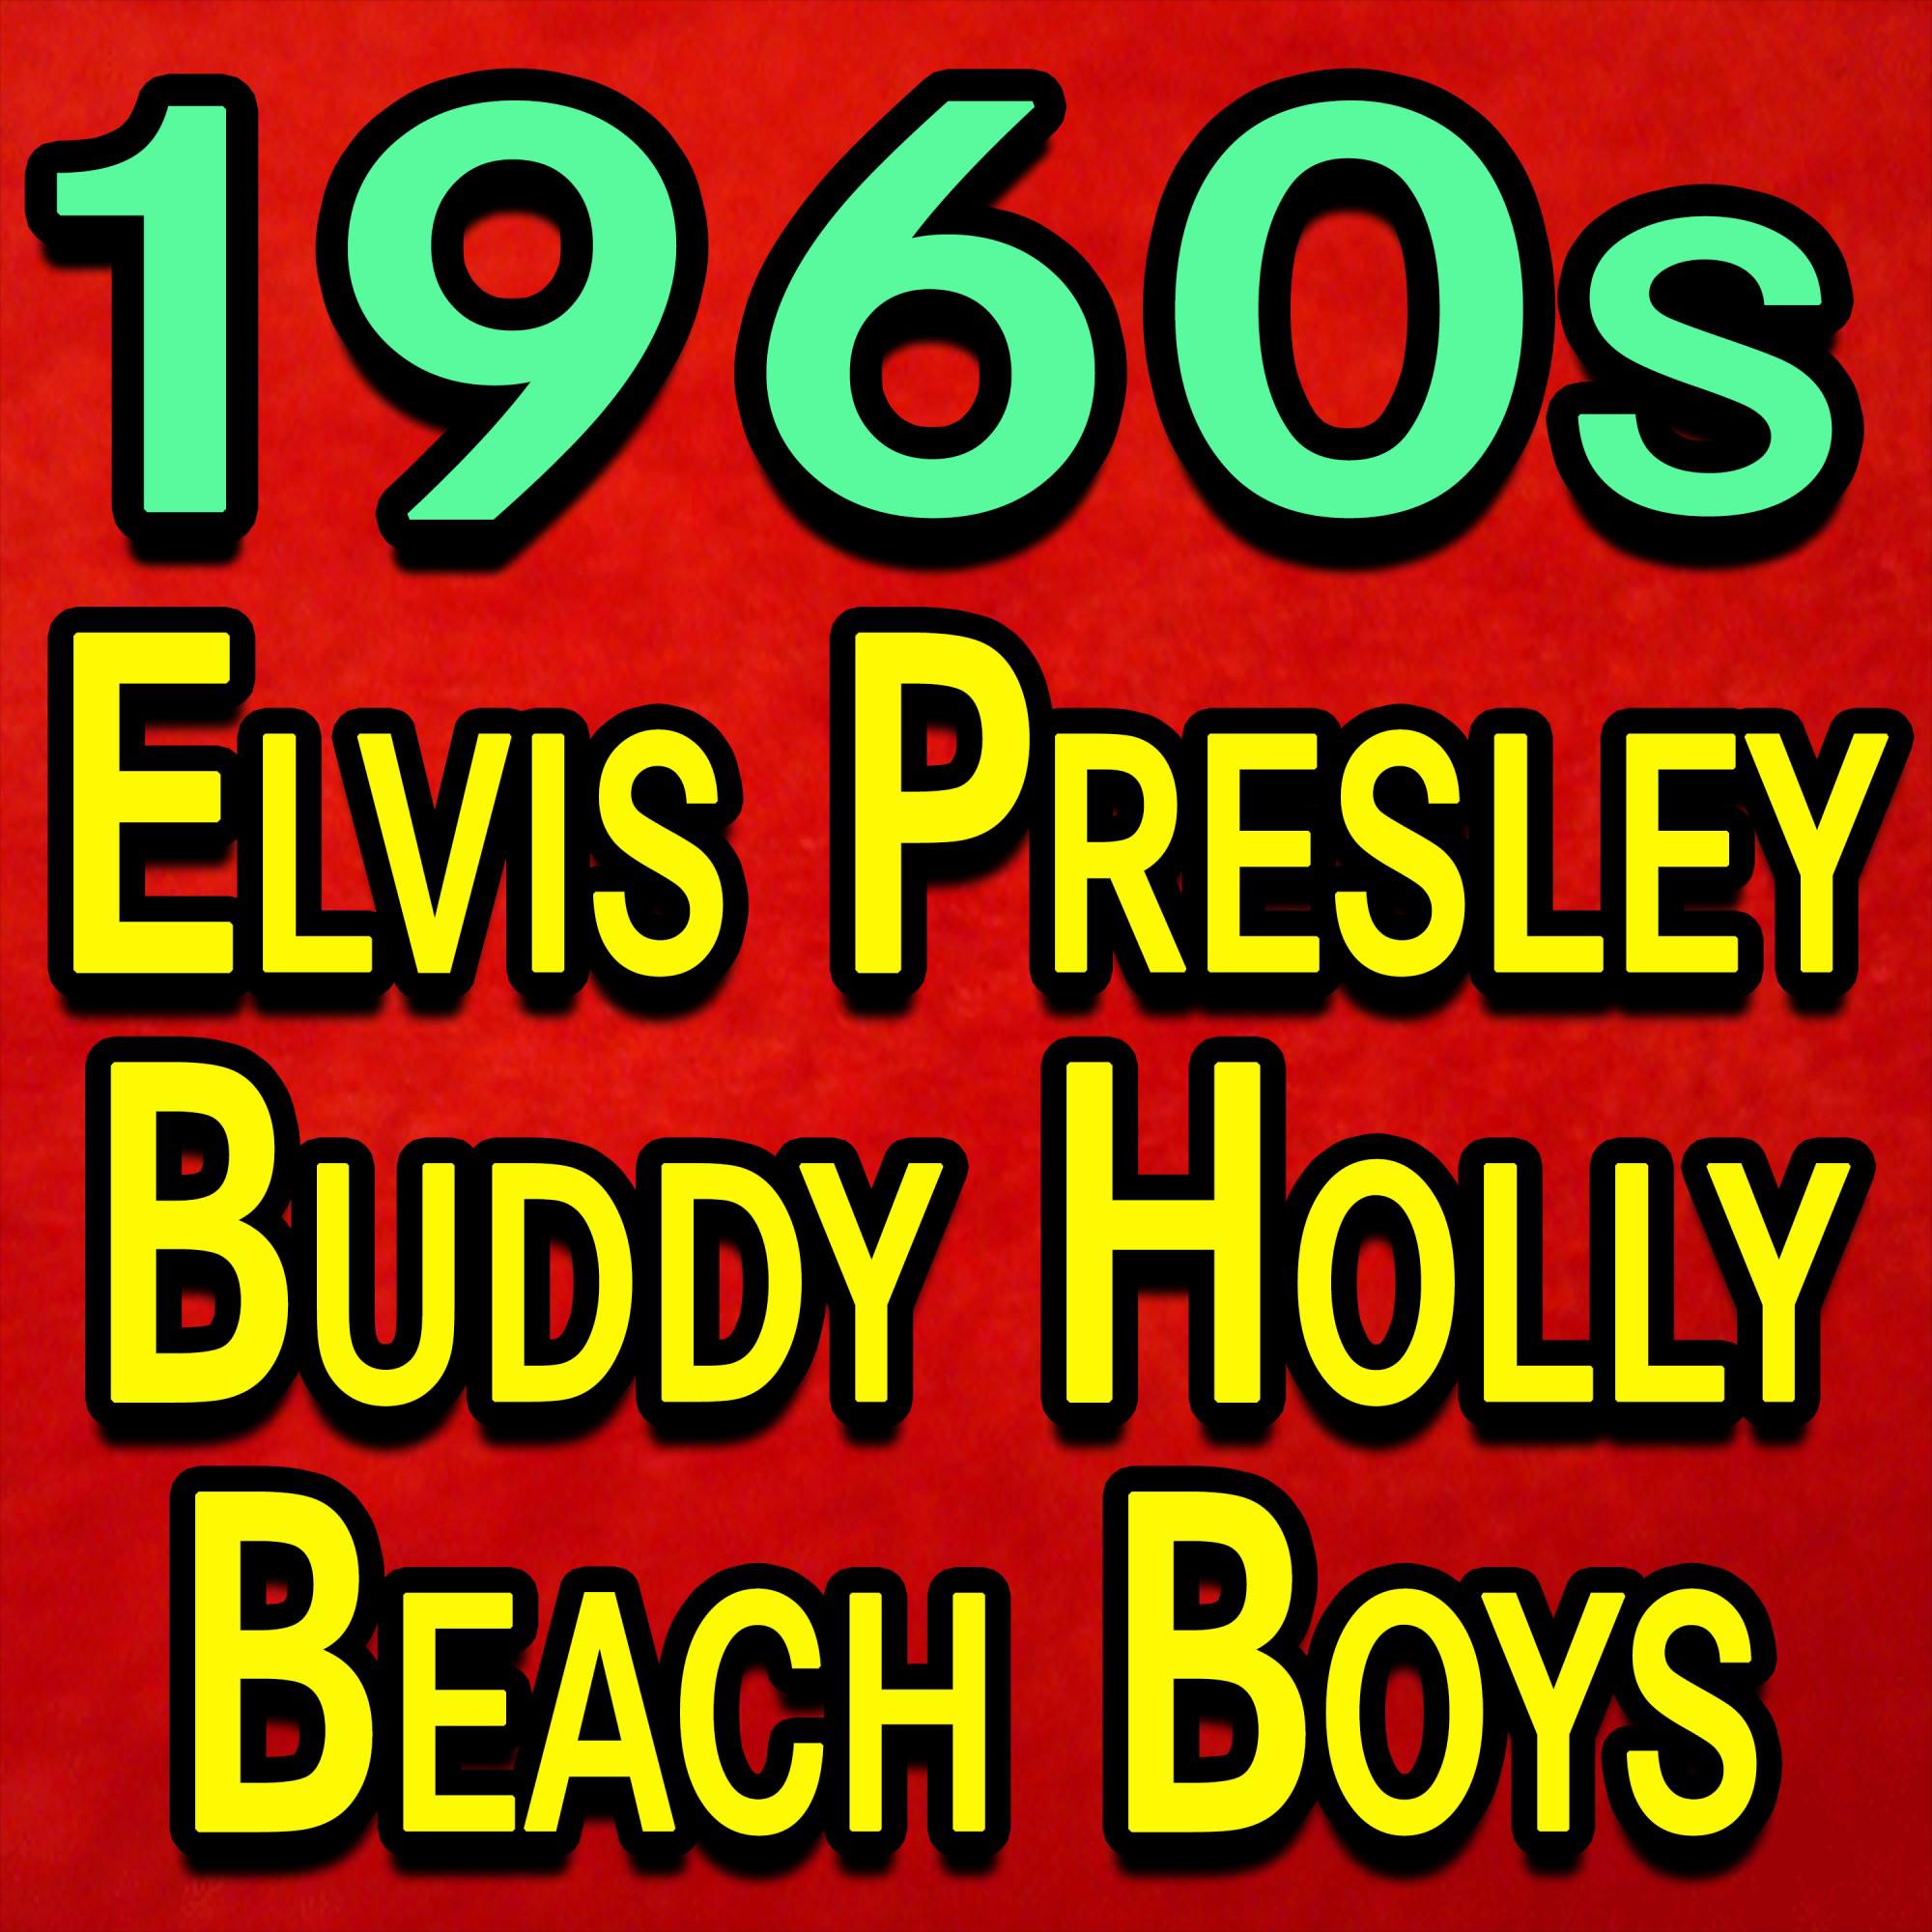 1960s Elvis Presley Buddy Holly Beach Boys